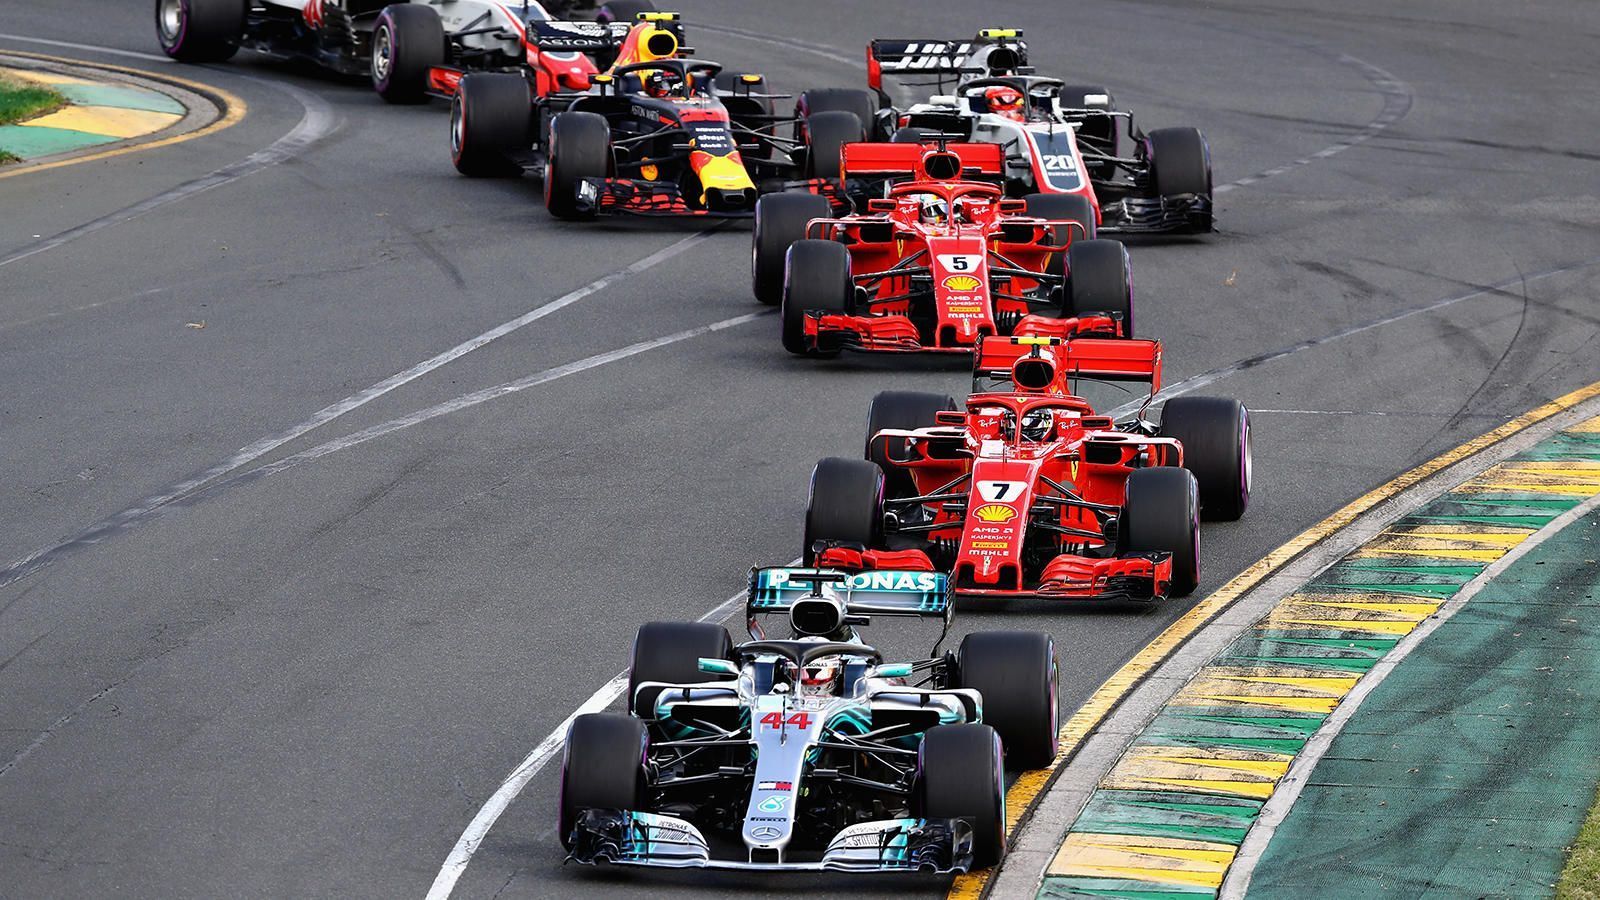 
                <strong> Formel 1: Die Regeländerungen ab 2021 im Überblick</strong><br>
                Die Formel 1 führt ab der Saison 2021 schrittweise neue Regeln ein. Die Änderungen sollen für mehr Spannung auf dem Asphalt sorgen, Kosteneinsparungen bringen und die Chancengleichheit unter den Teams erhöhen.  
              